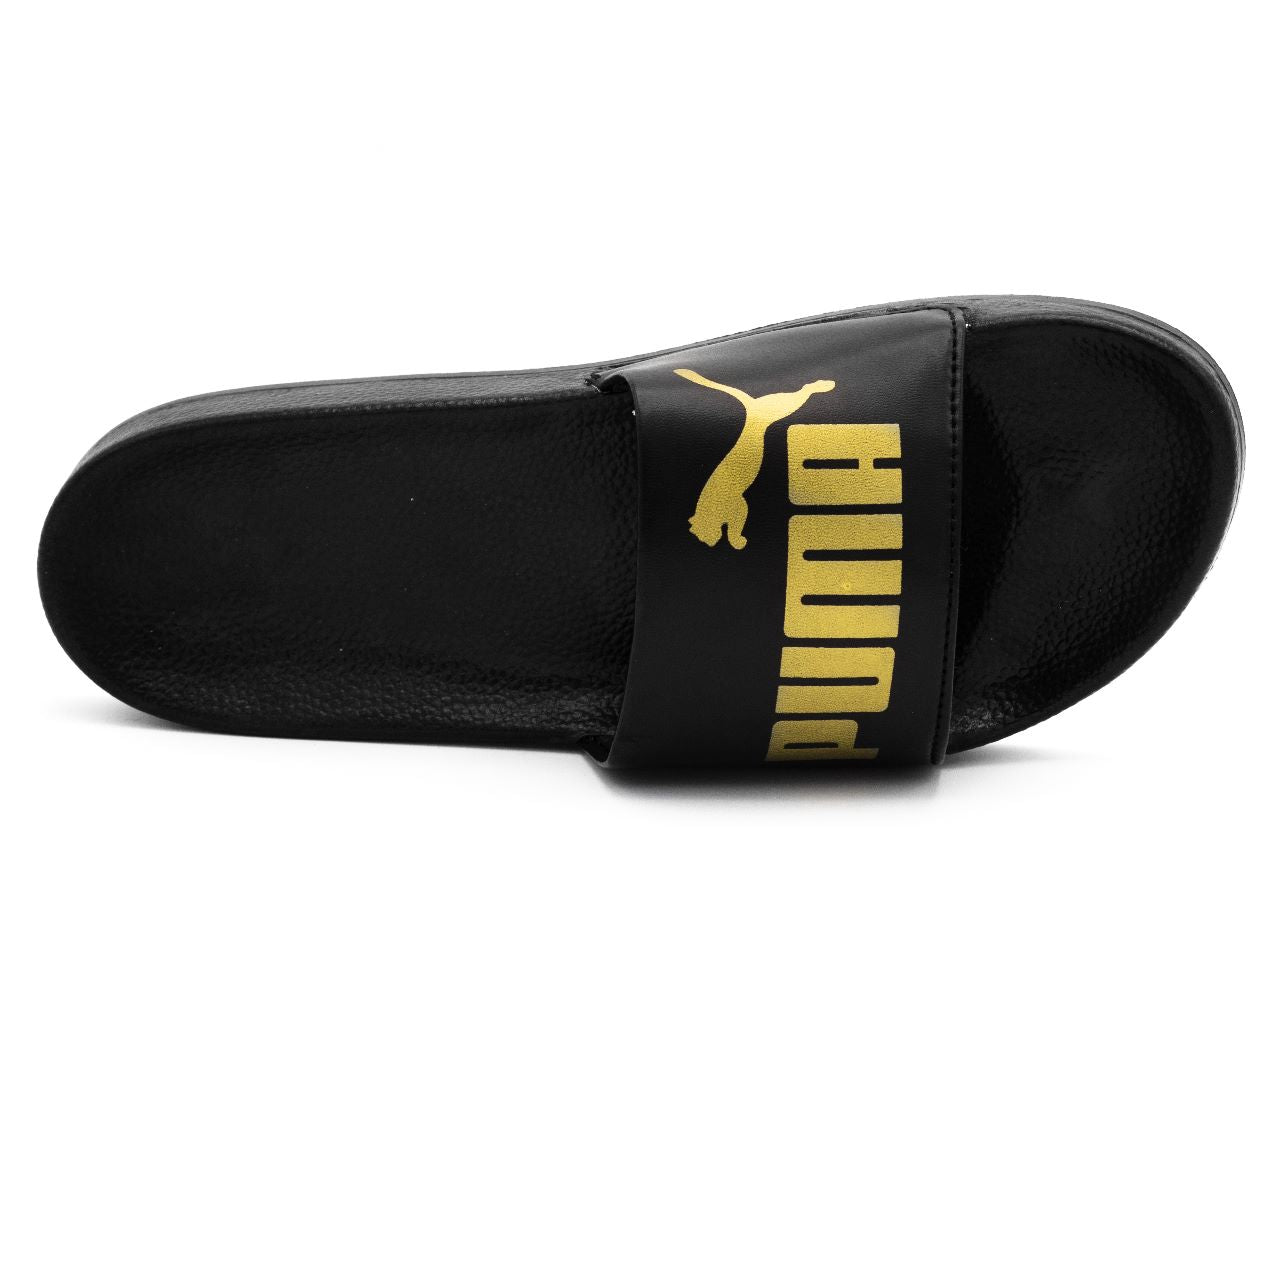 Black pma slipper